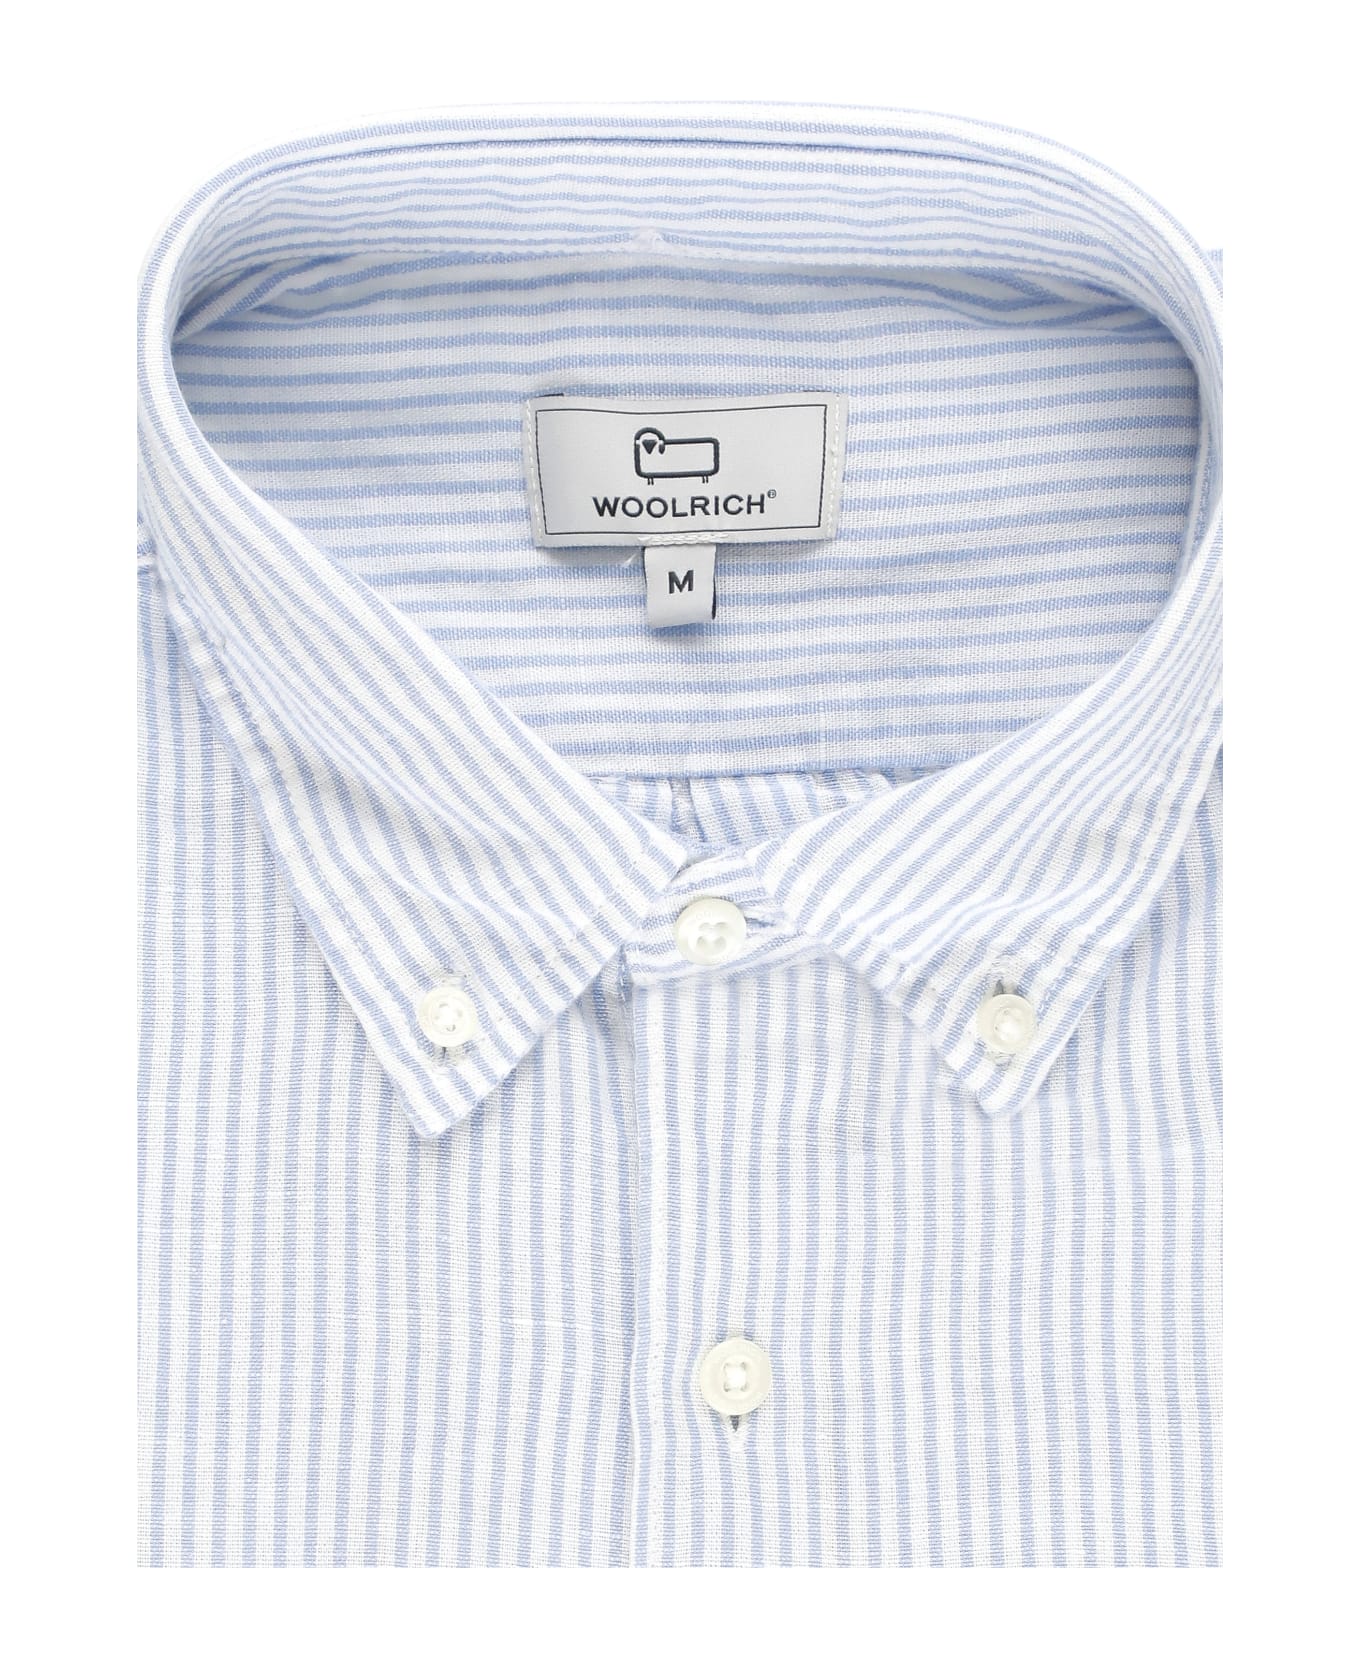 Woolrich Blend Linen Shirt - White/light blue